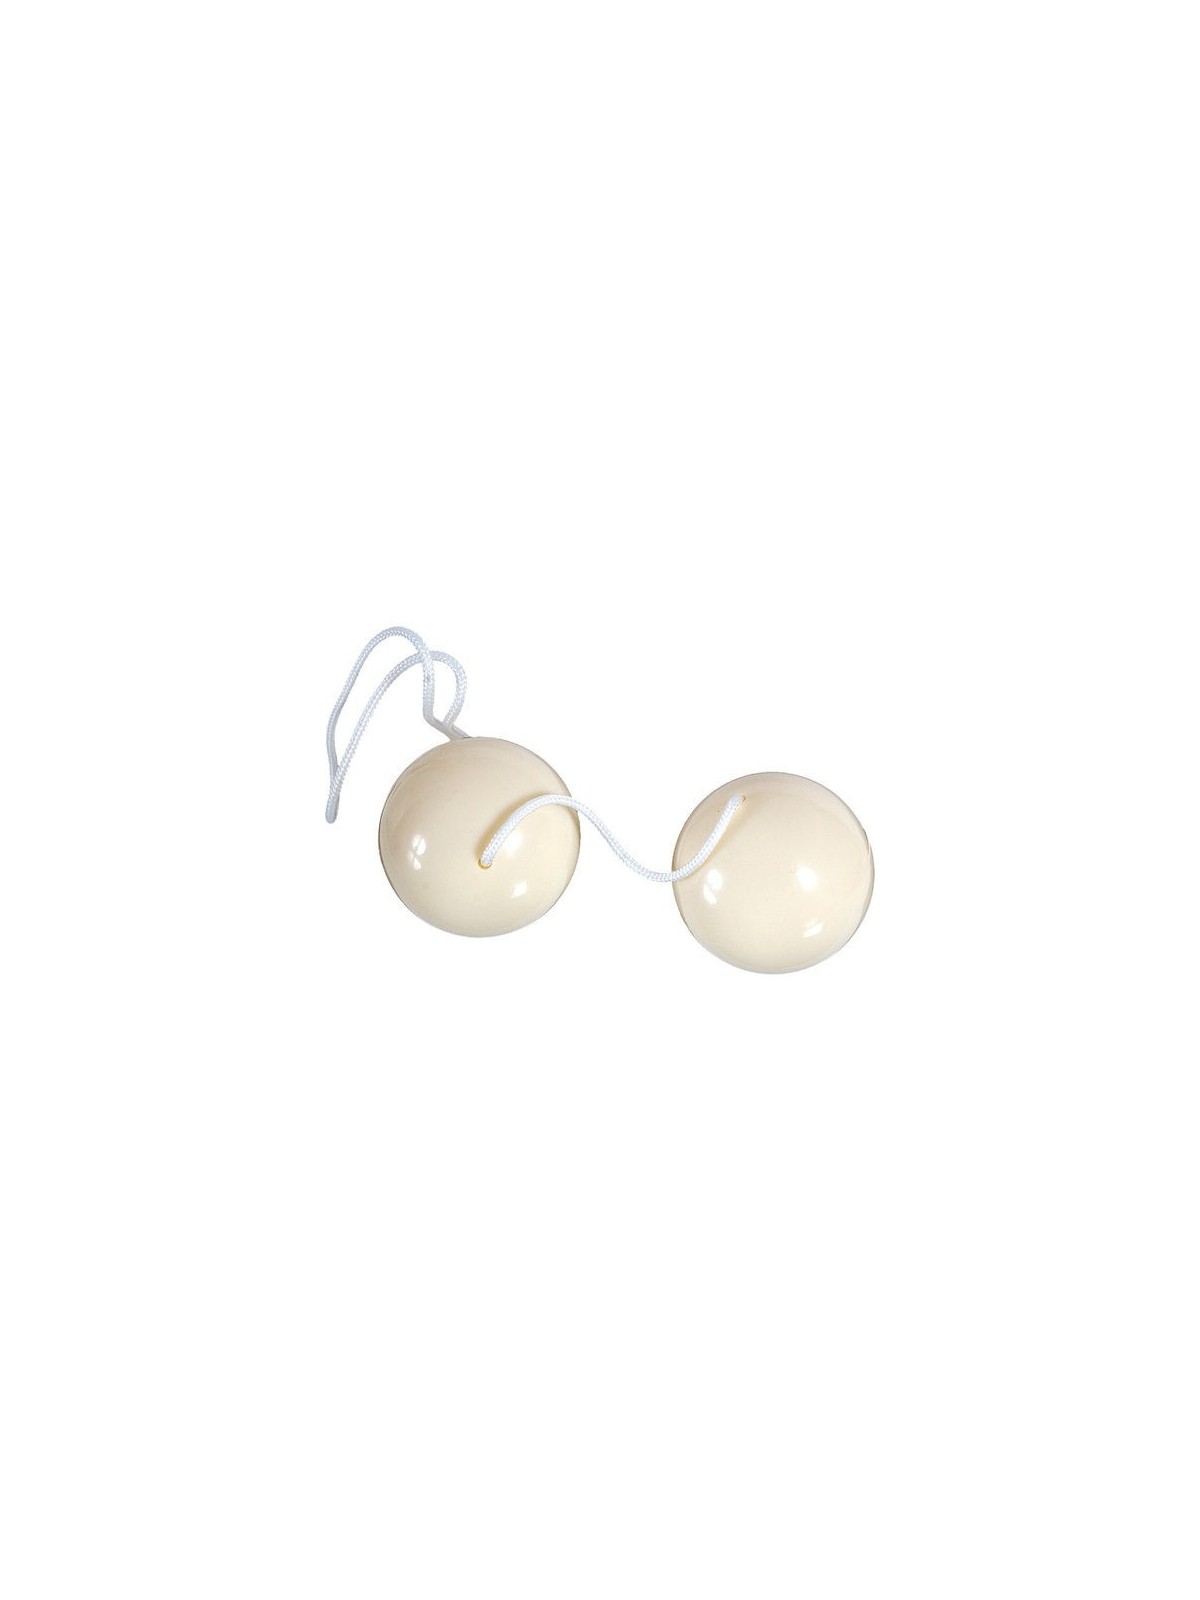 Sevencrations Duoballs Color Crema - Comprar Bolas chinas Sevencreations - Bolas chinas (1)